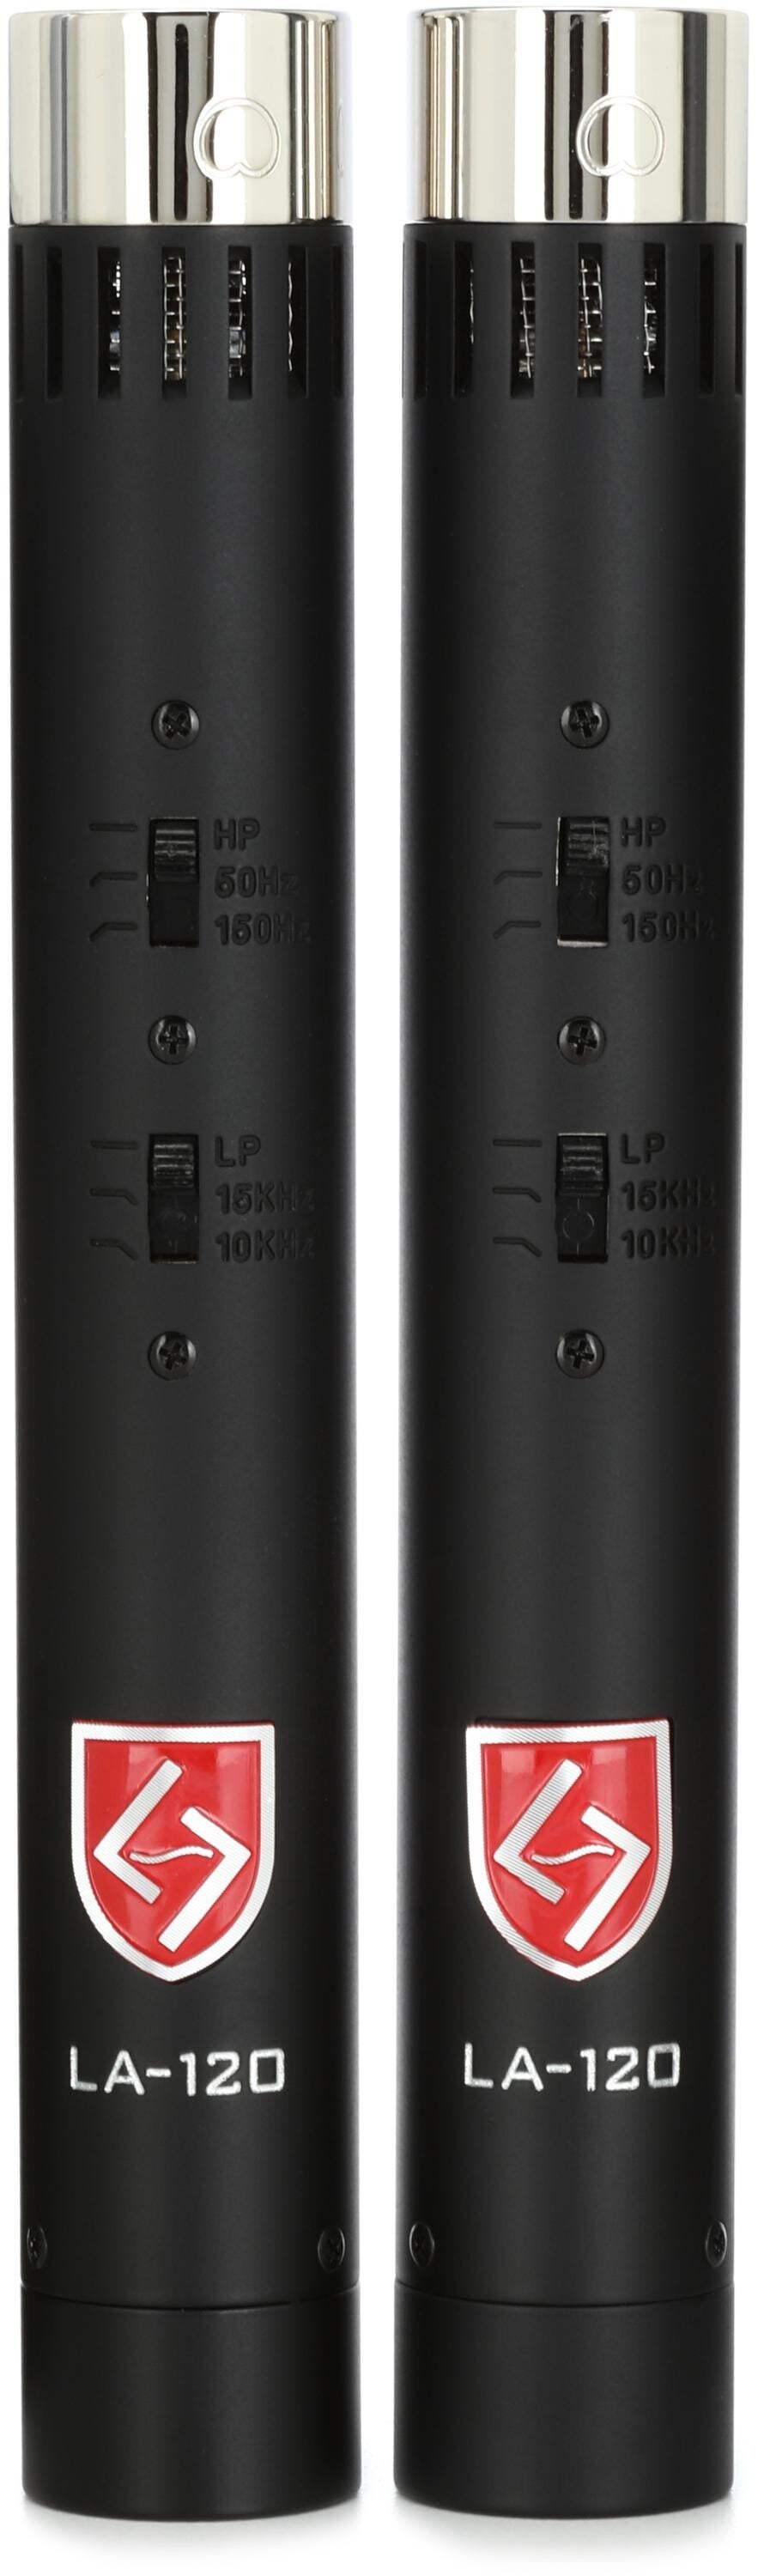 Bundled Item: Lauten Audio LA-120 V2 Small-diaphragm Condenser Microphone Pair